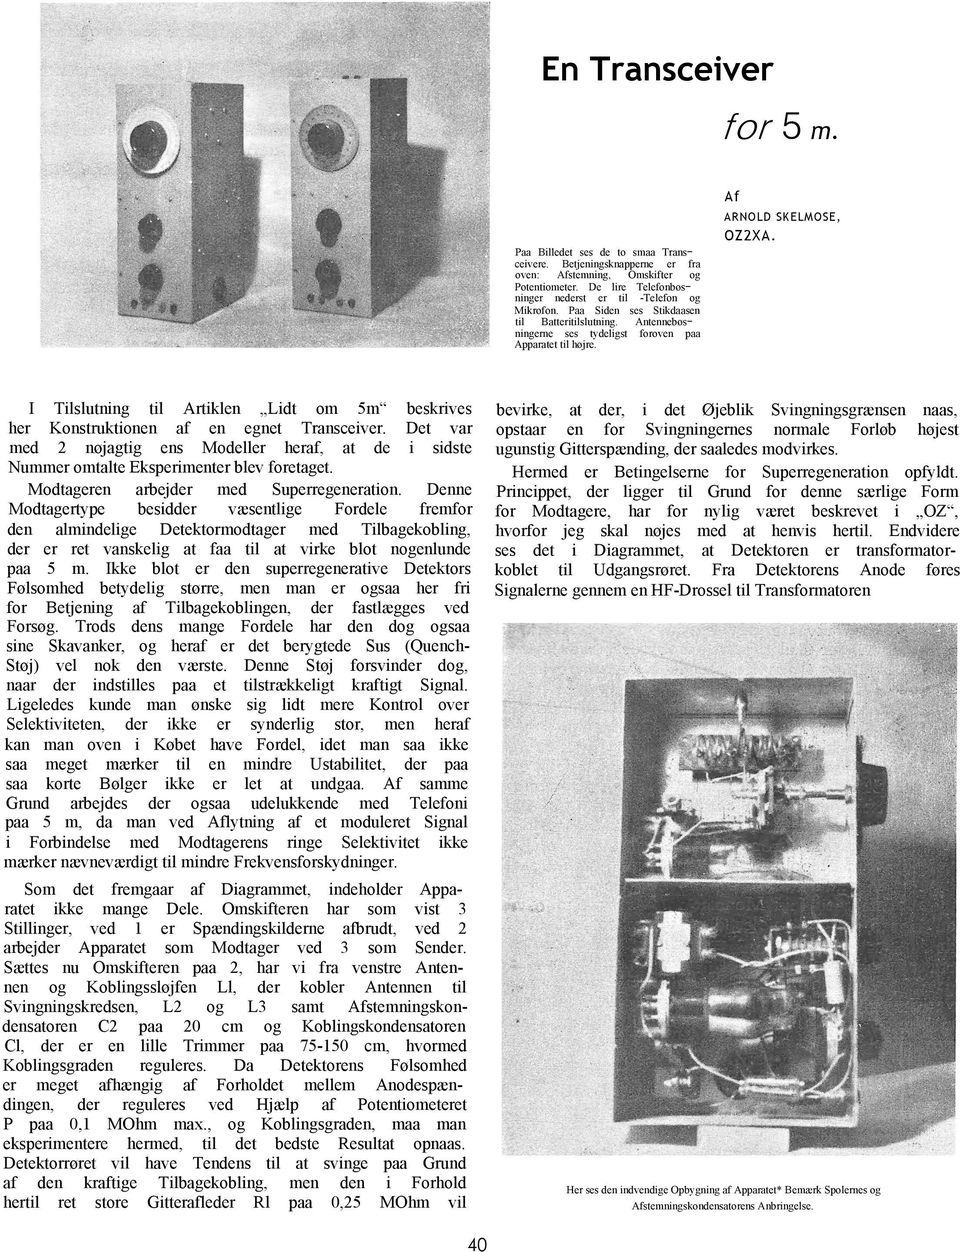 I Tilslutning til Artiklen Lidt om 5m beskrives her Konstruktionen af en egnet Transceiver. Det var med 2 nøjagtig ens Modeller heraf, at de i sidste Nummer omtalte Eksperimenter blev foretaget.